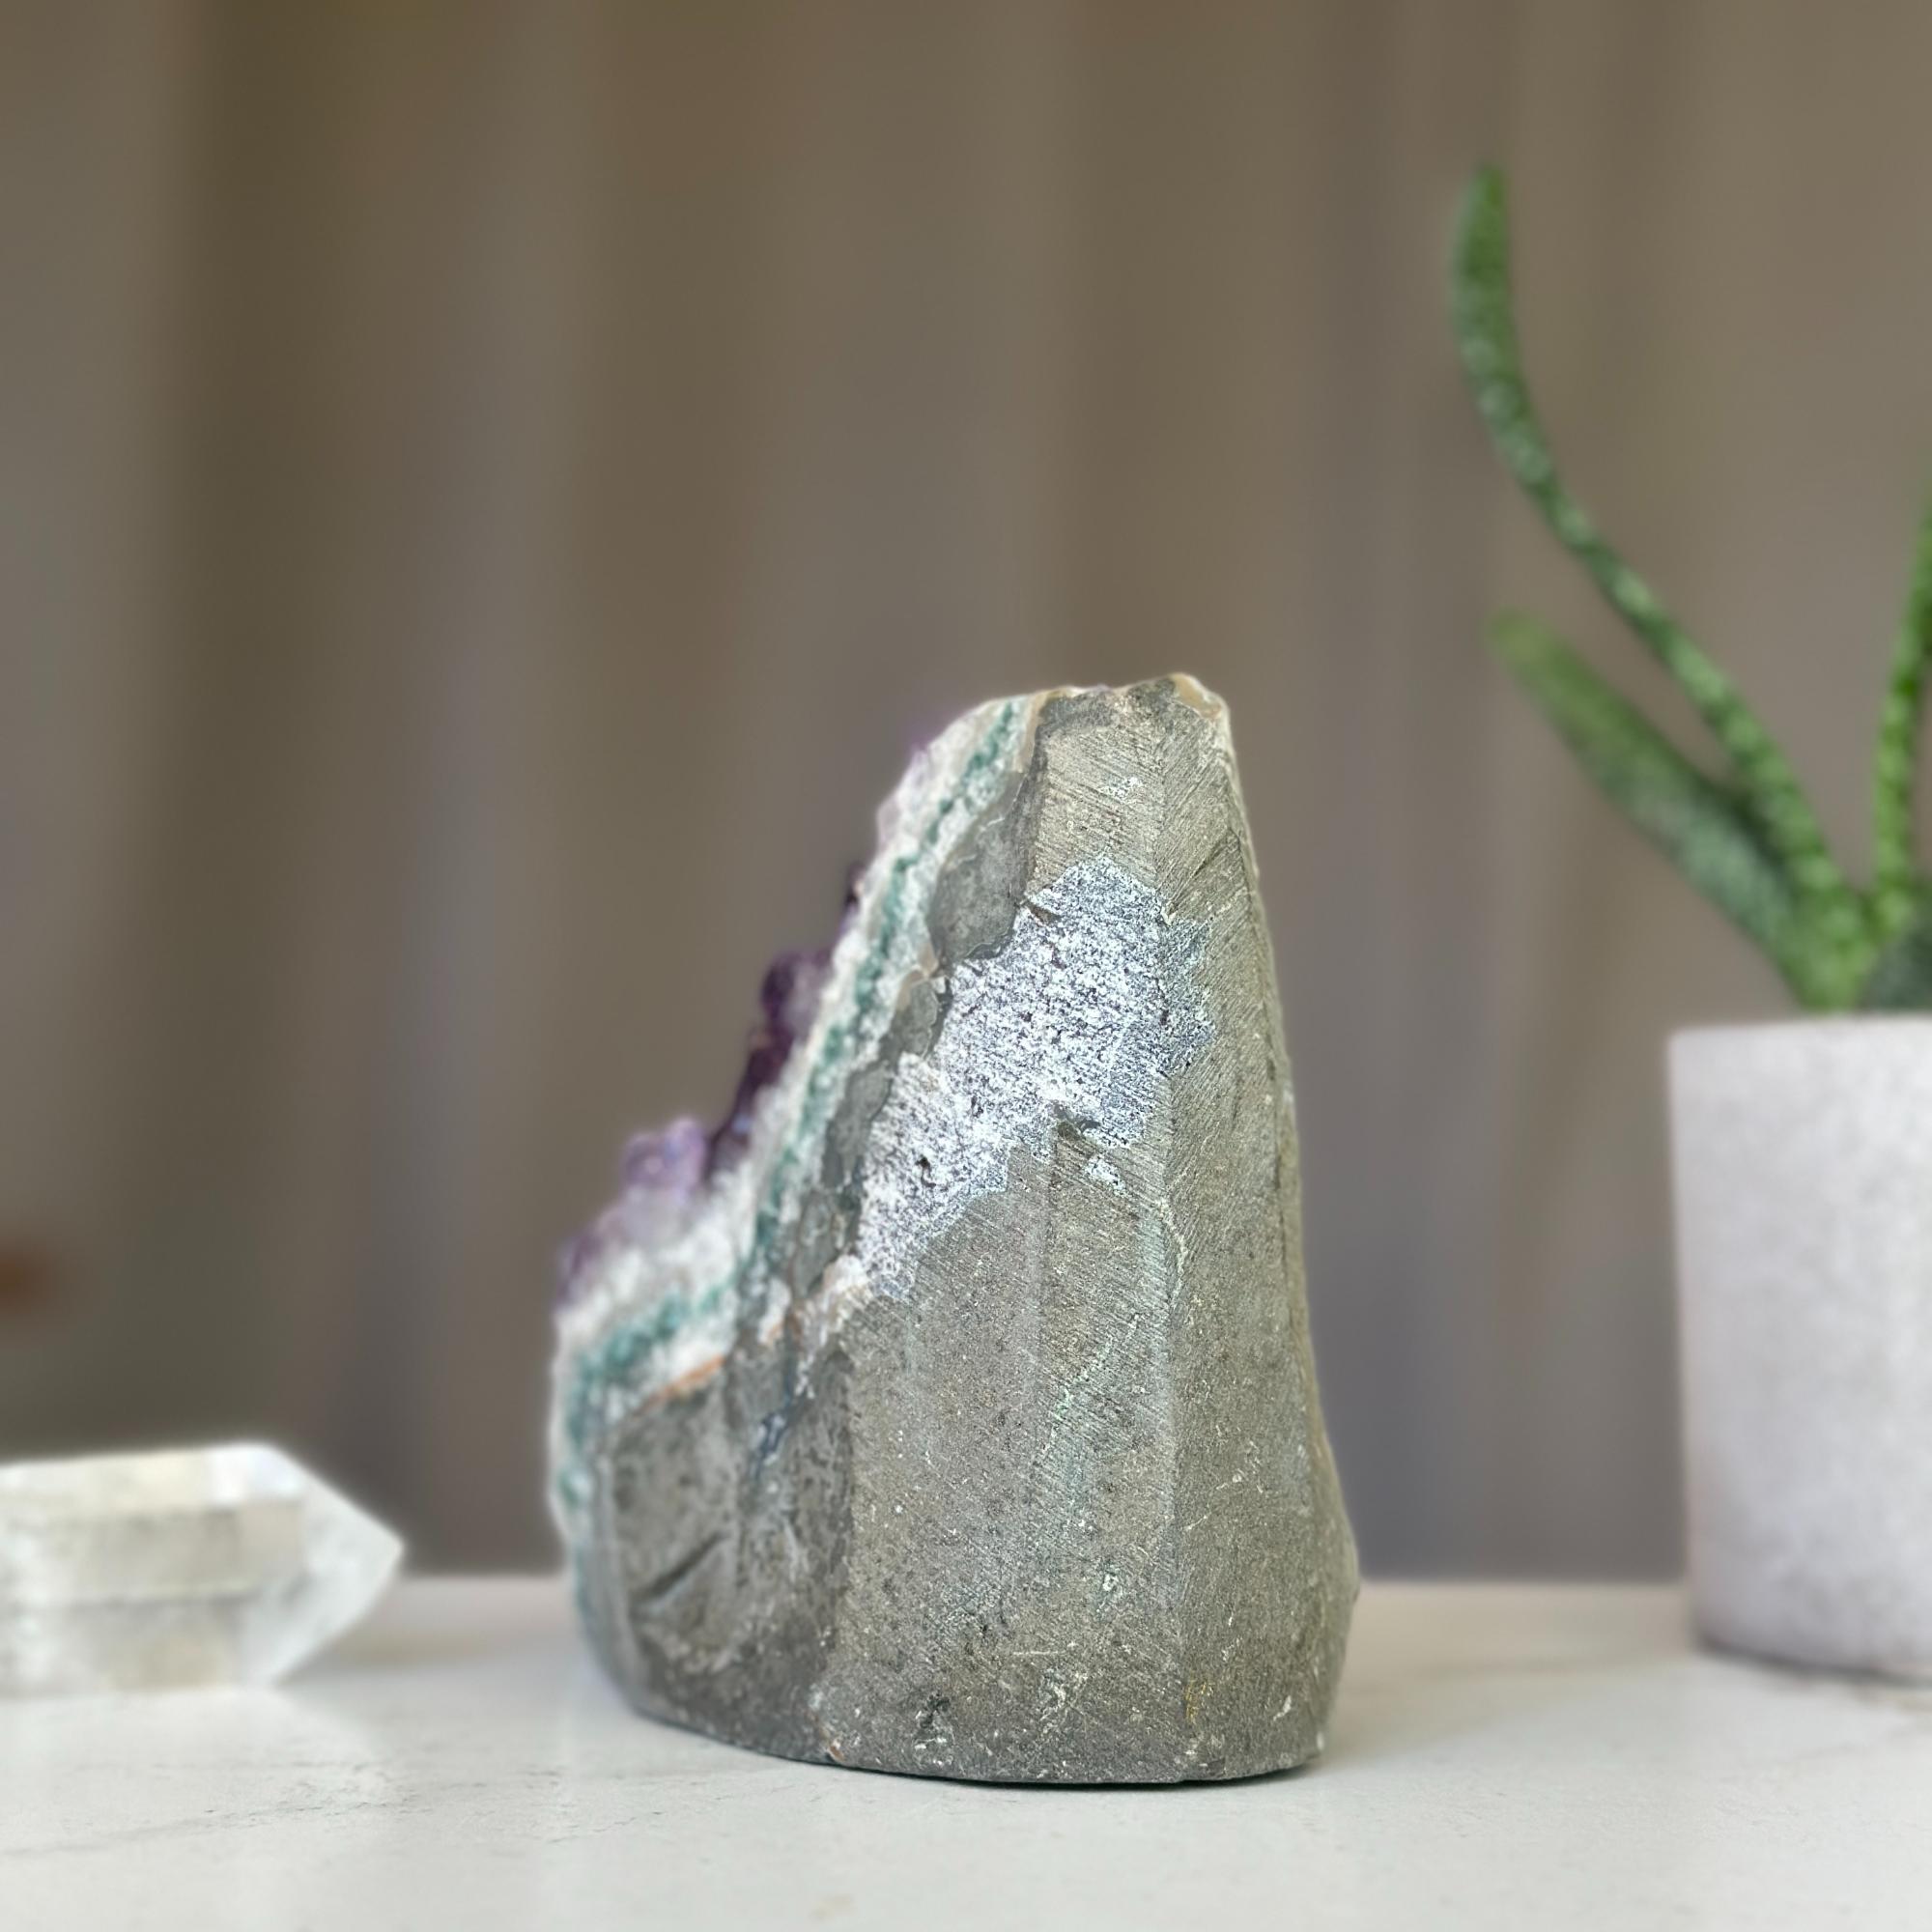 Amethyst druzy stone (2Lb. piece), extra large amethyst geode